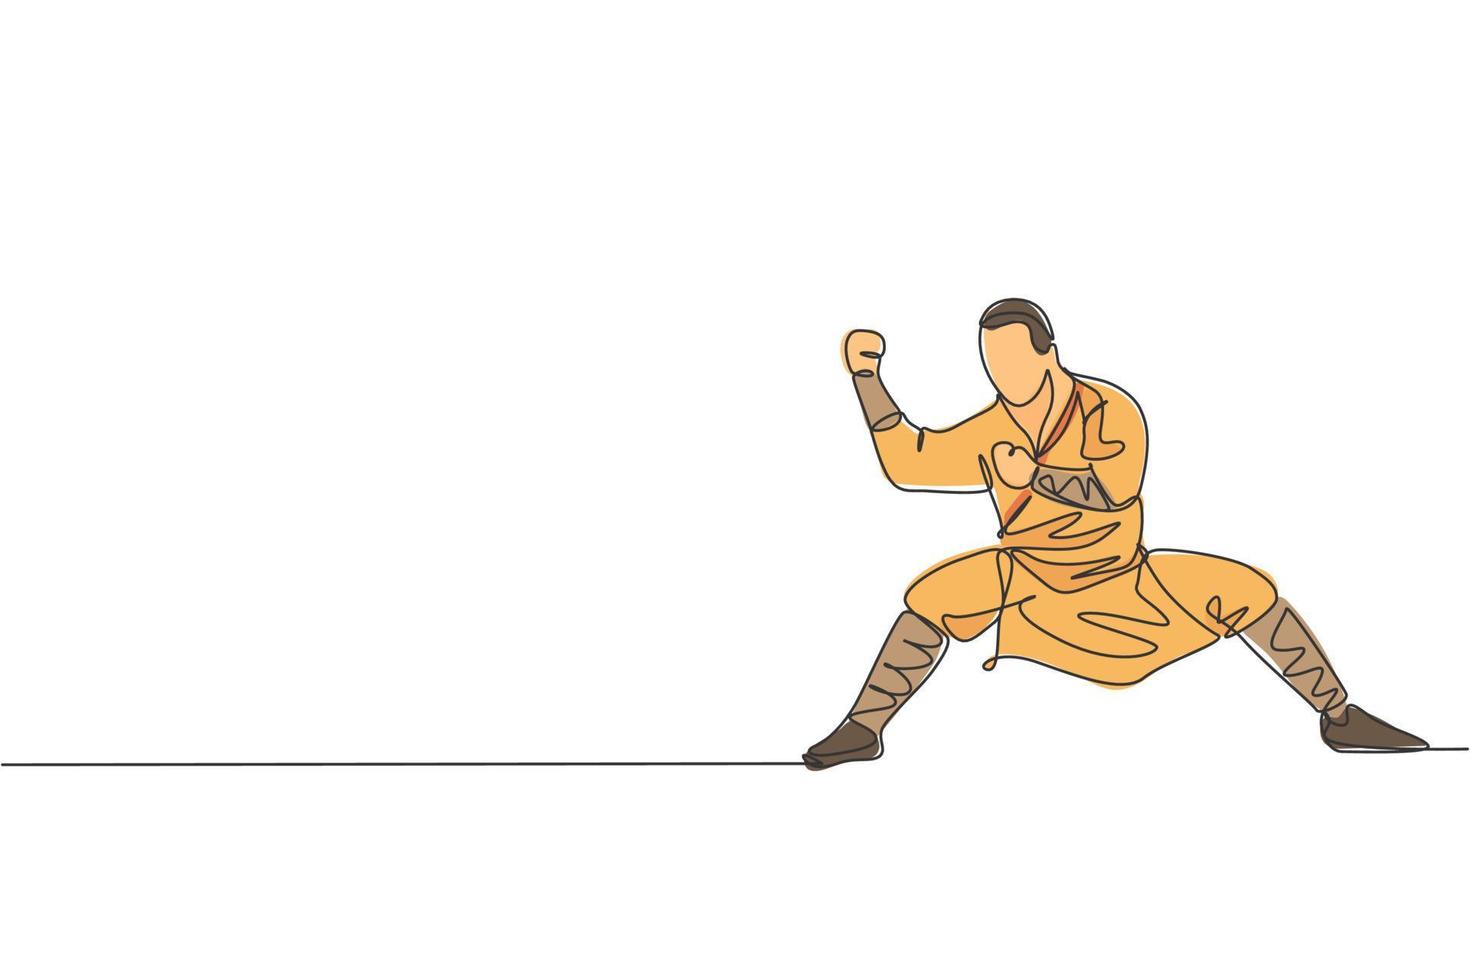 disegno a linea continua singola giovane monaco shaolin muscoloso uomo treno arte marziale al tempio shaolin. concetto di lotta di kung fu cinese tradizionale. illustrazione vettoriale di design grafico di una linea alla moda